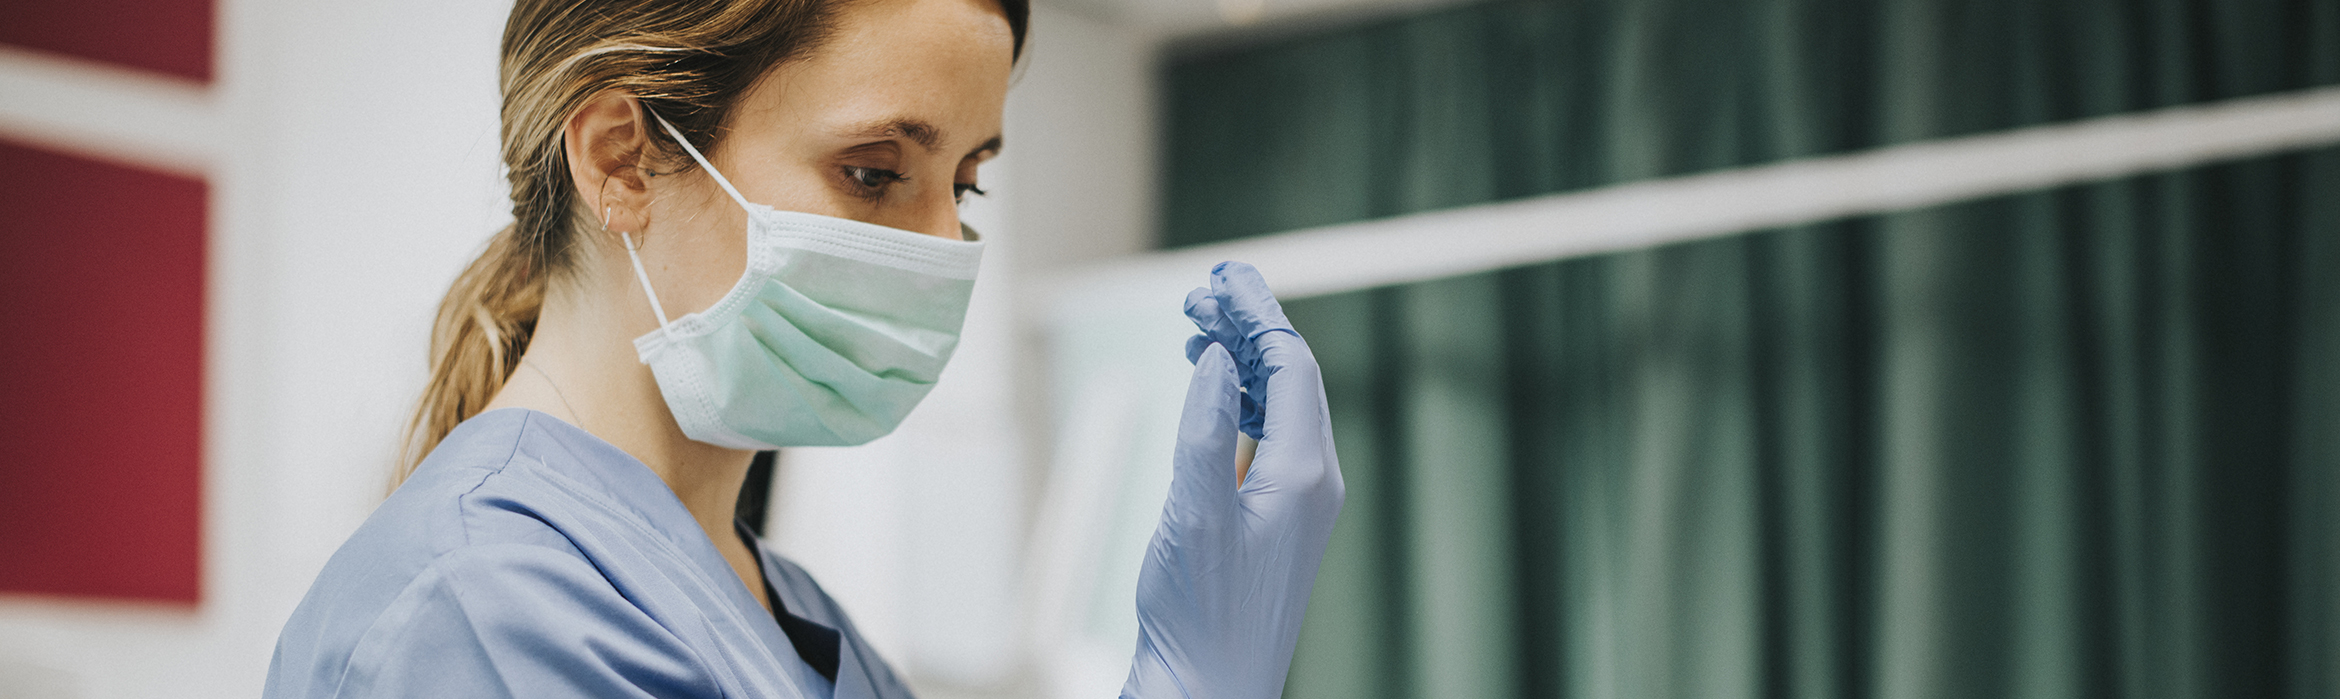 Enfermera con mascarilla y traje azul colocandose un guante